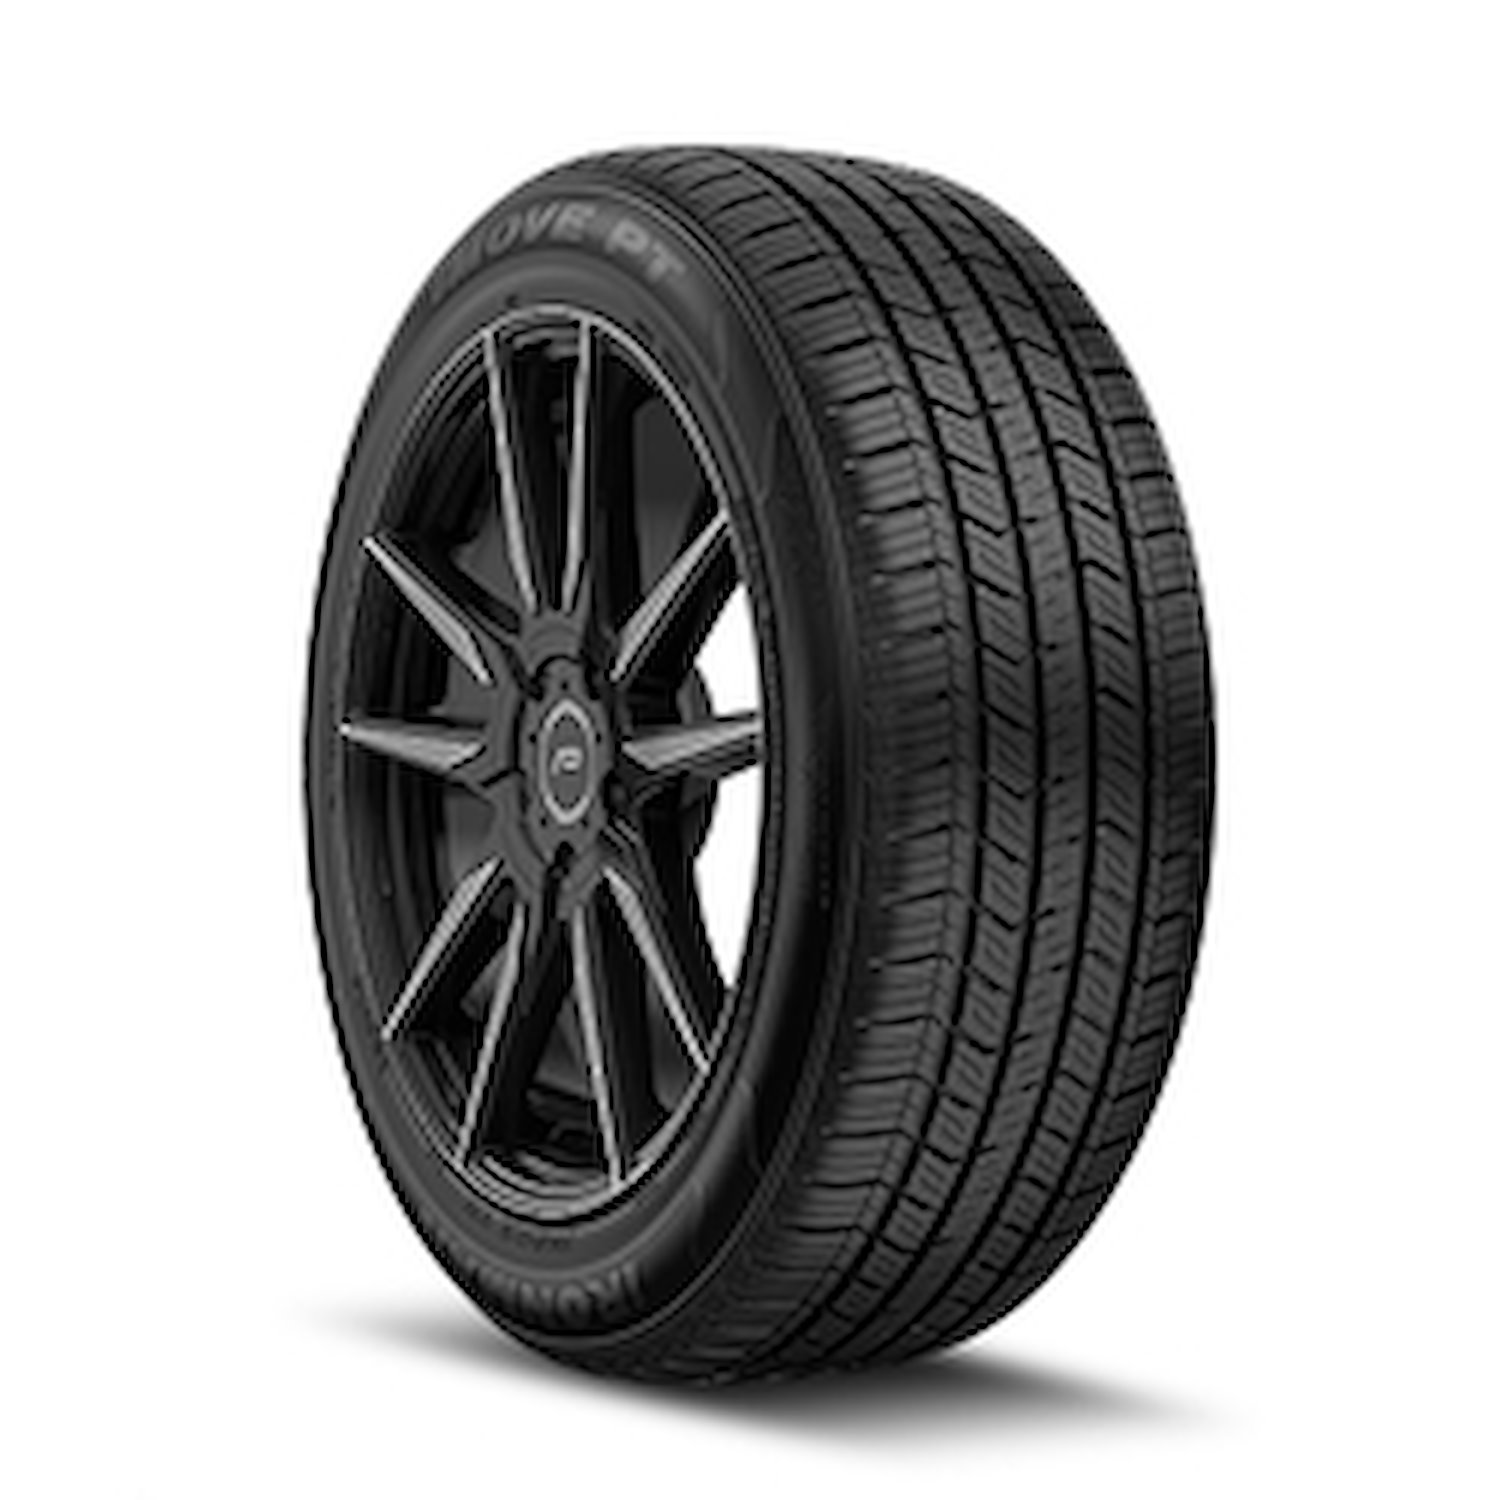 98447 iMOVE PT Tire, 175/65R14, 82H